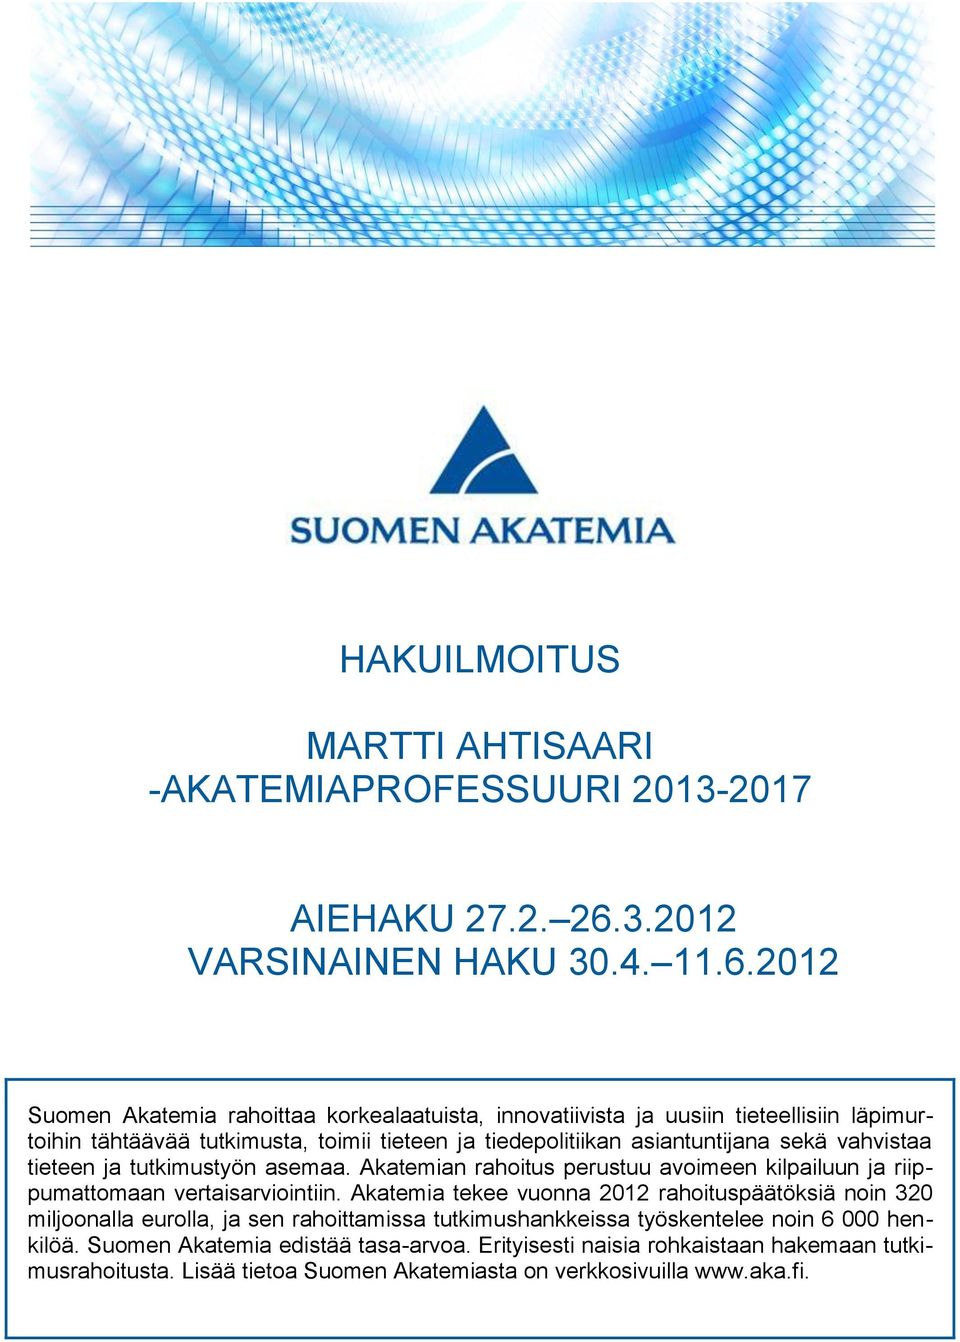 2012 Suomen Akatemia rahoittaa korkealaatuista, innovatiivista ja uusiin tieteellisiin läpimurtoihin tähtäävää tutkimusta, toimii tieteen ja tiedepolitiikan asiantuntijana sekä